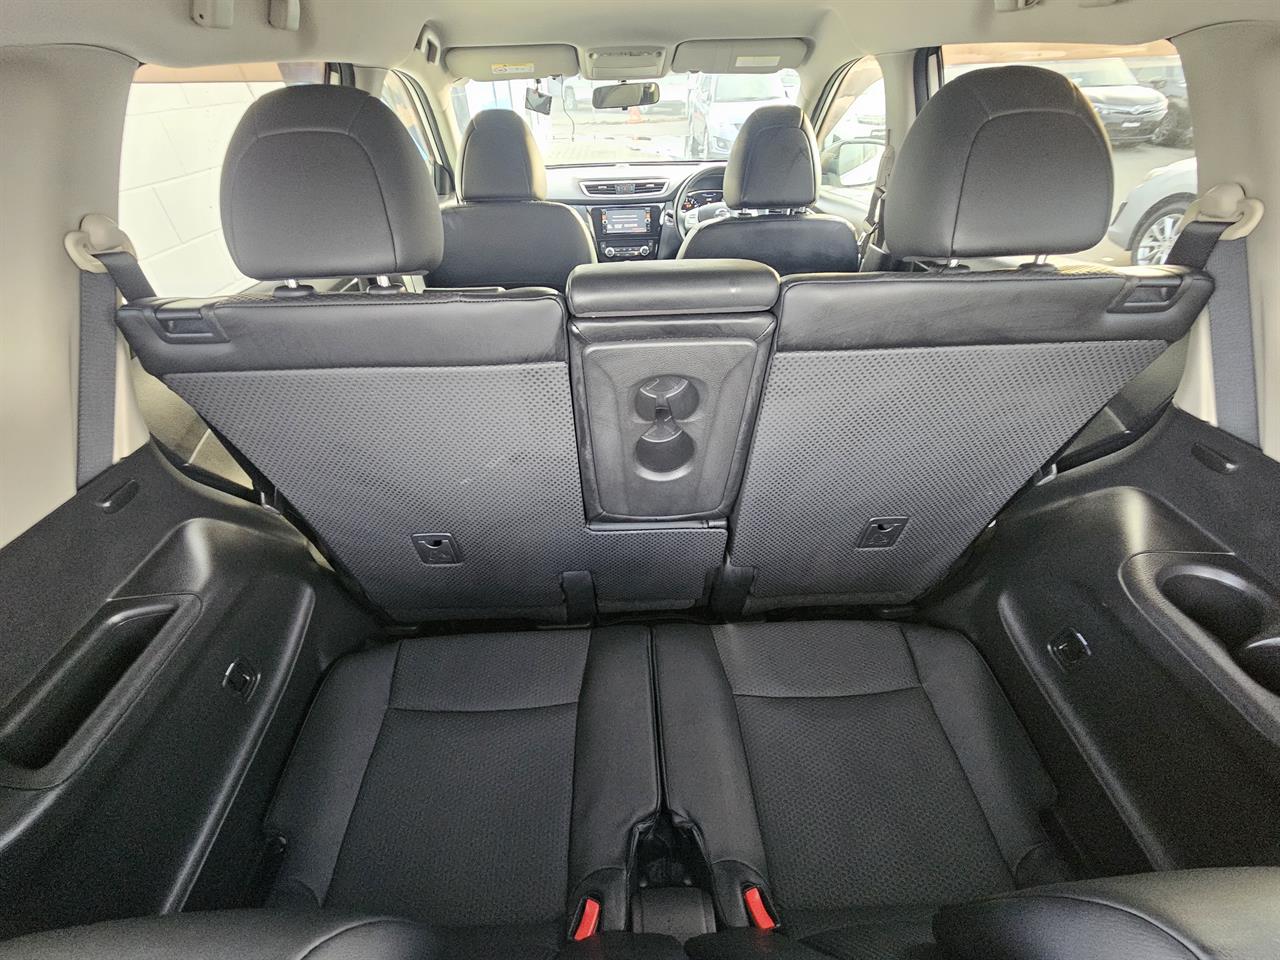 2014 Nissan X-Trail 7 Seats